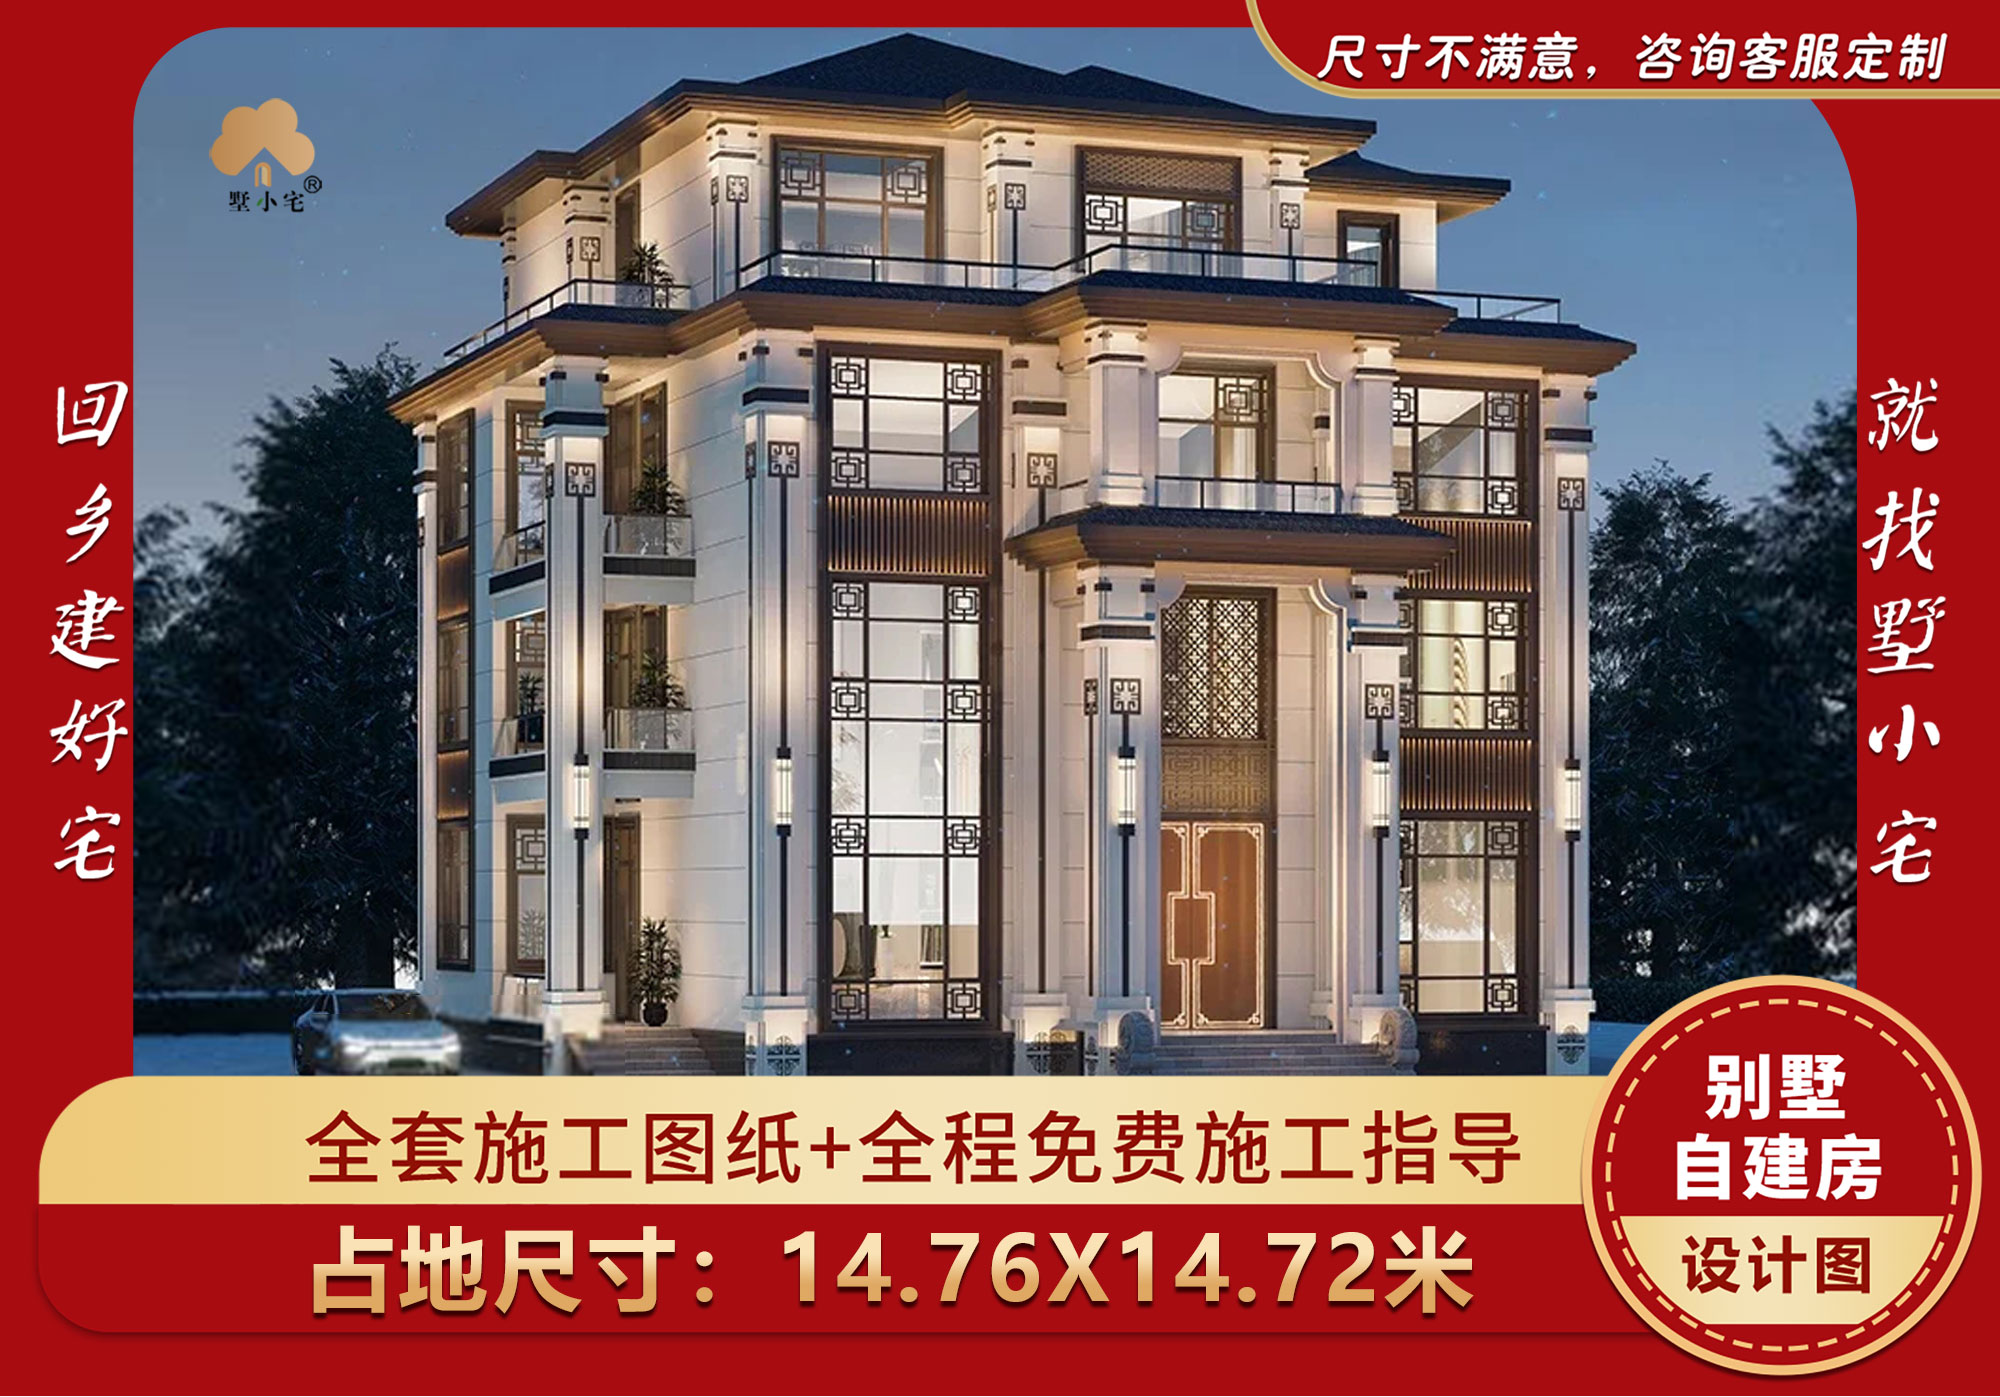 【2304277】顶级新中式别墅，最新四层别墅外观图片大全，复式客厅带电梯设计，14.76x14.72米